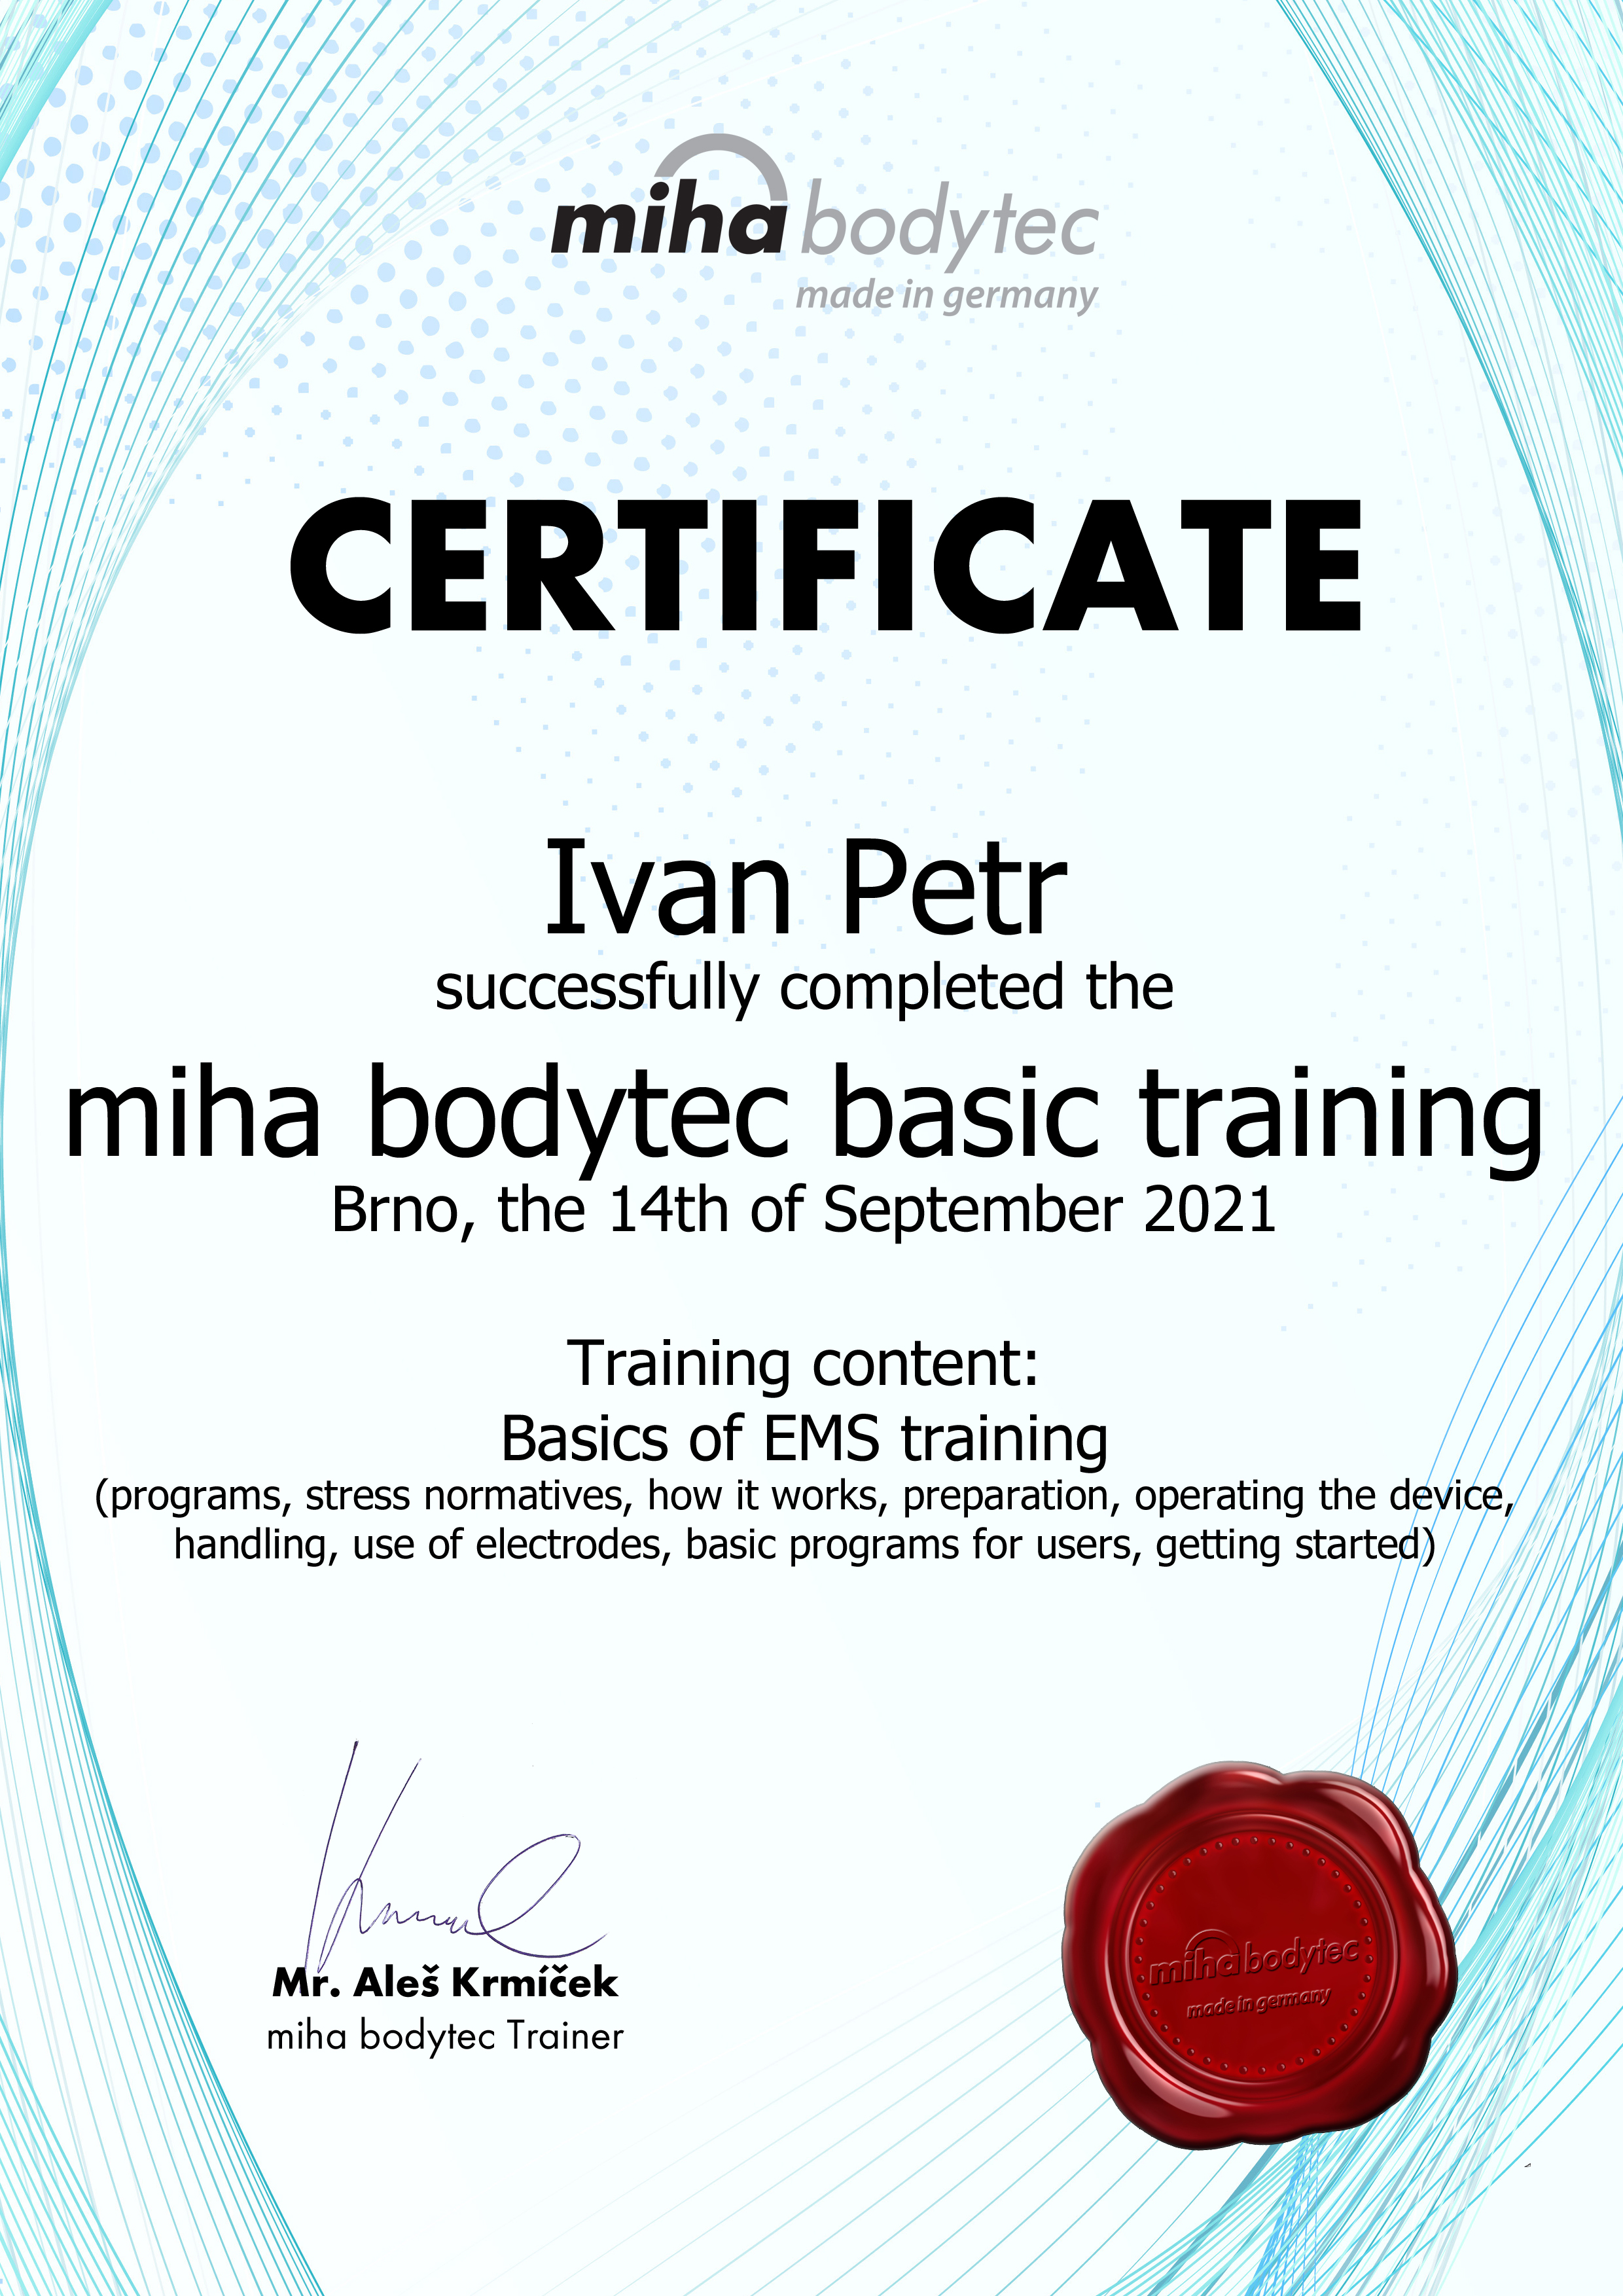 Certificate_Miha_Bodytec_Ivan Petr